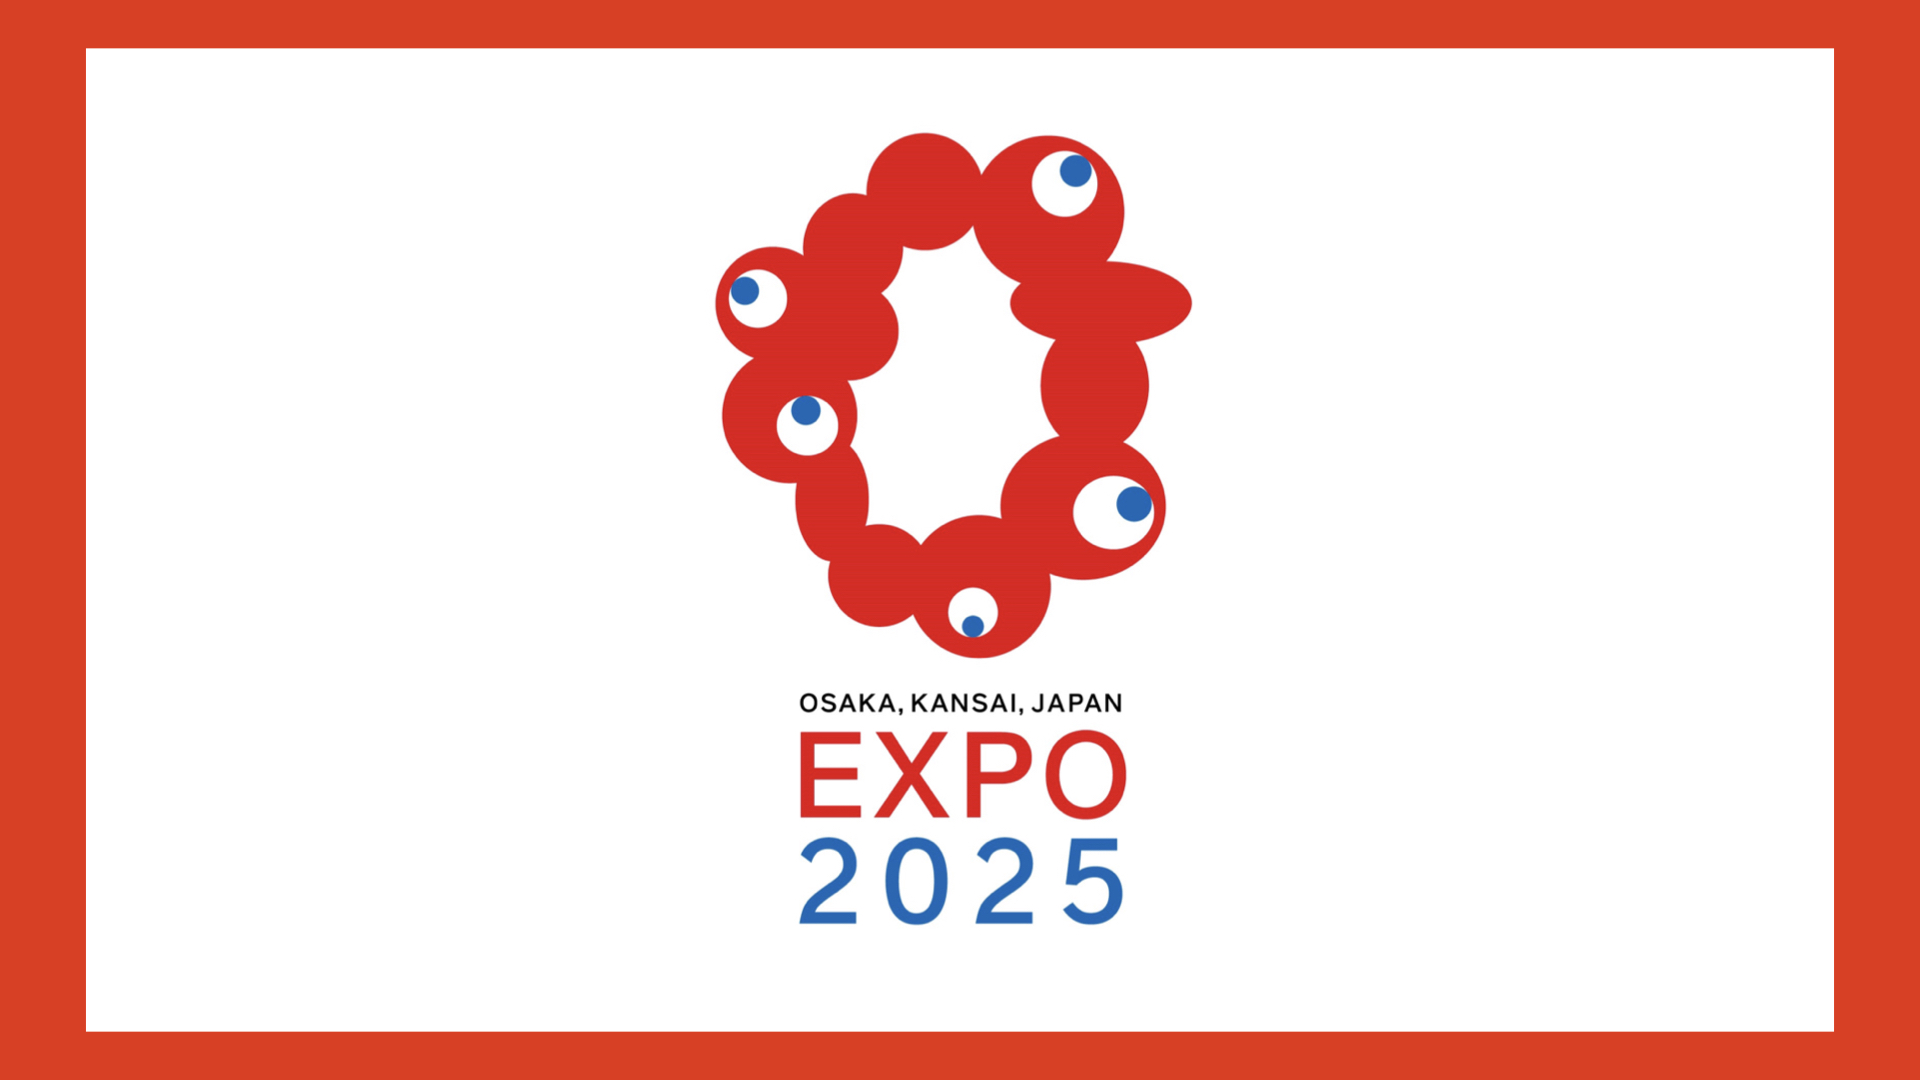 Osaka Expo 2025